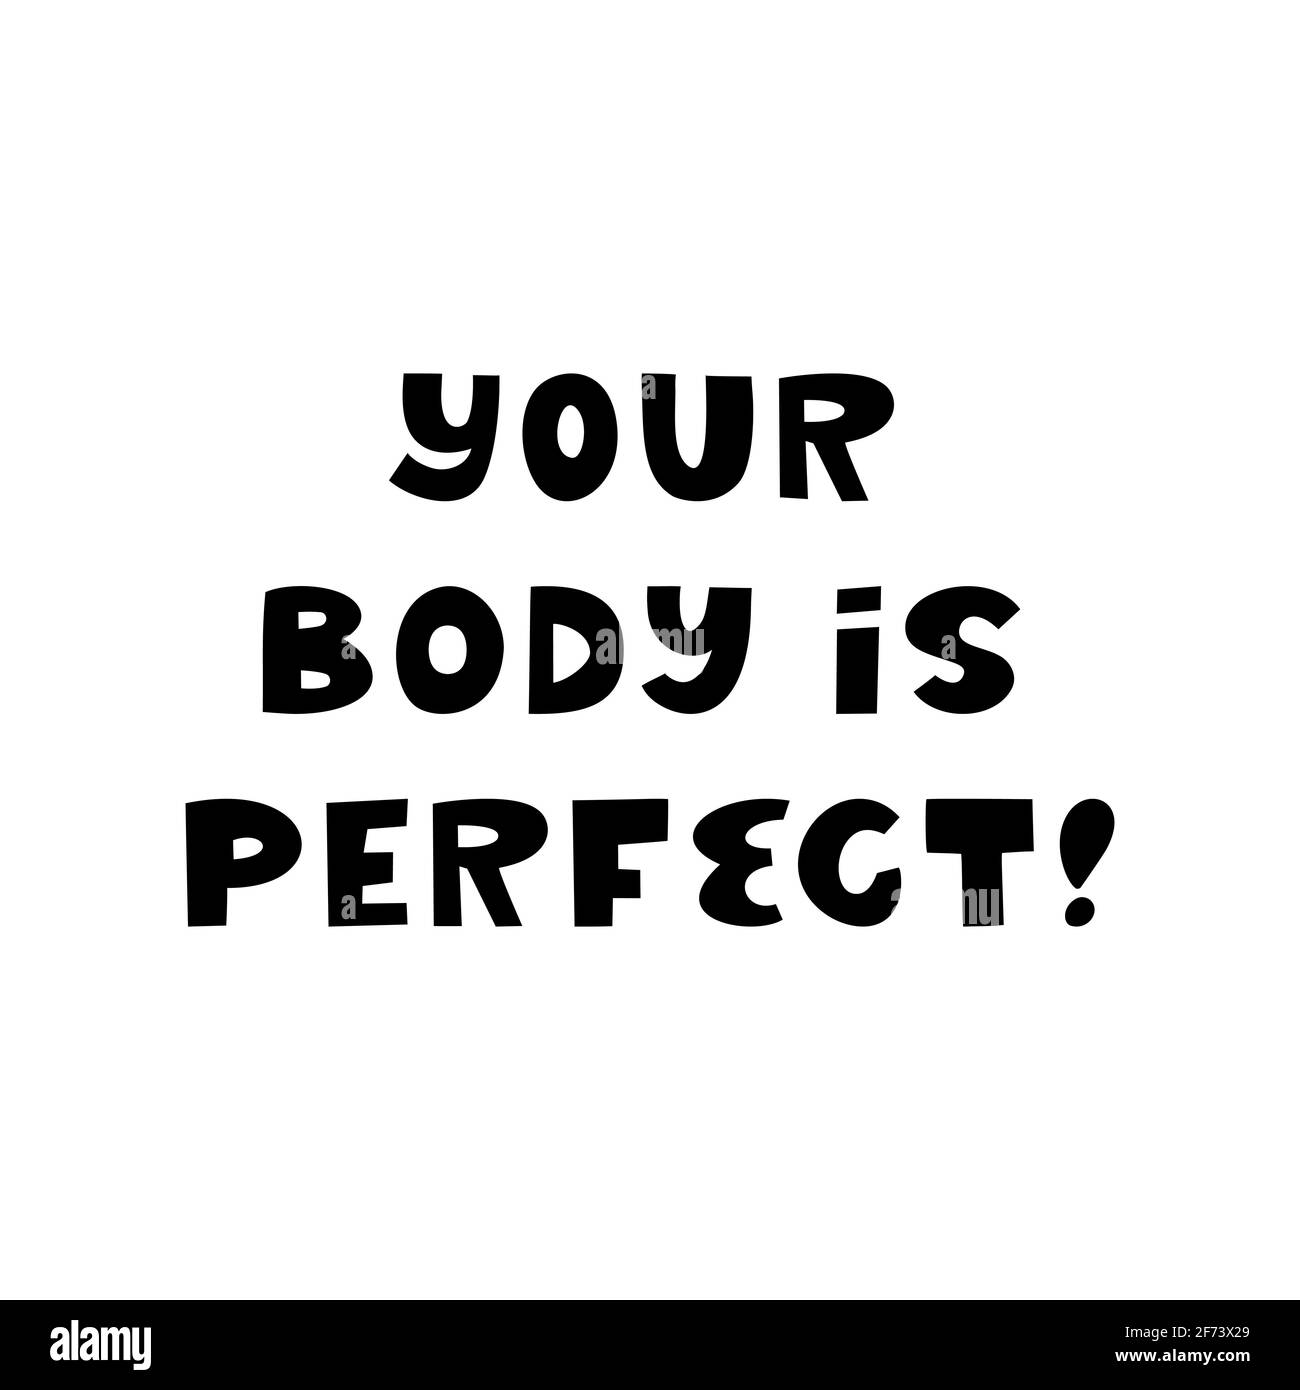 Il tuo corpo è perfetto. Cute scritta disegnata a mano isolata su sfondo bianco. Citazione positiva del corpo. Illustrazione Vettoriale